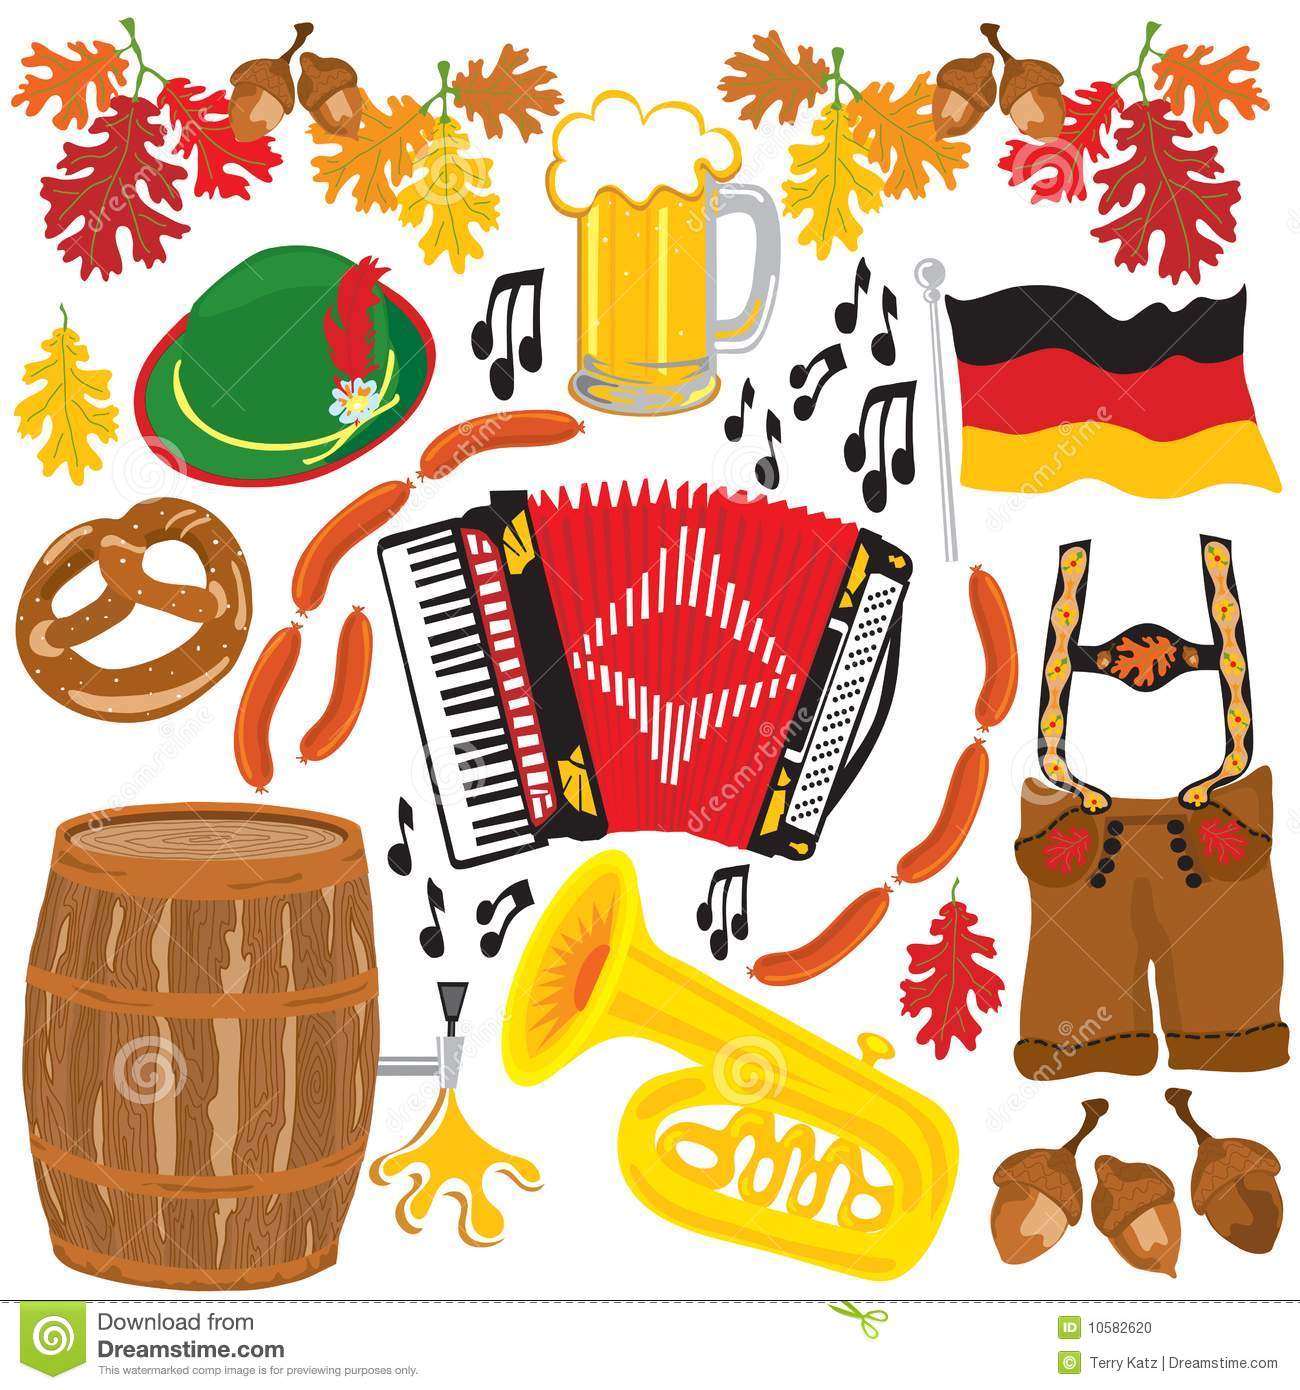 Oktoberfest party clipart elements Stock Photo